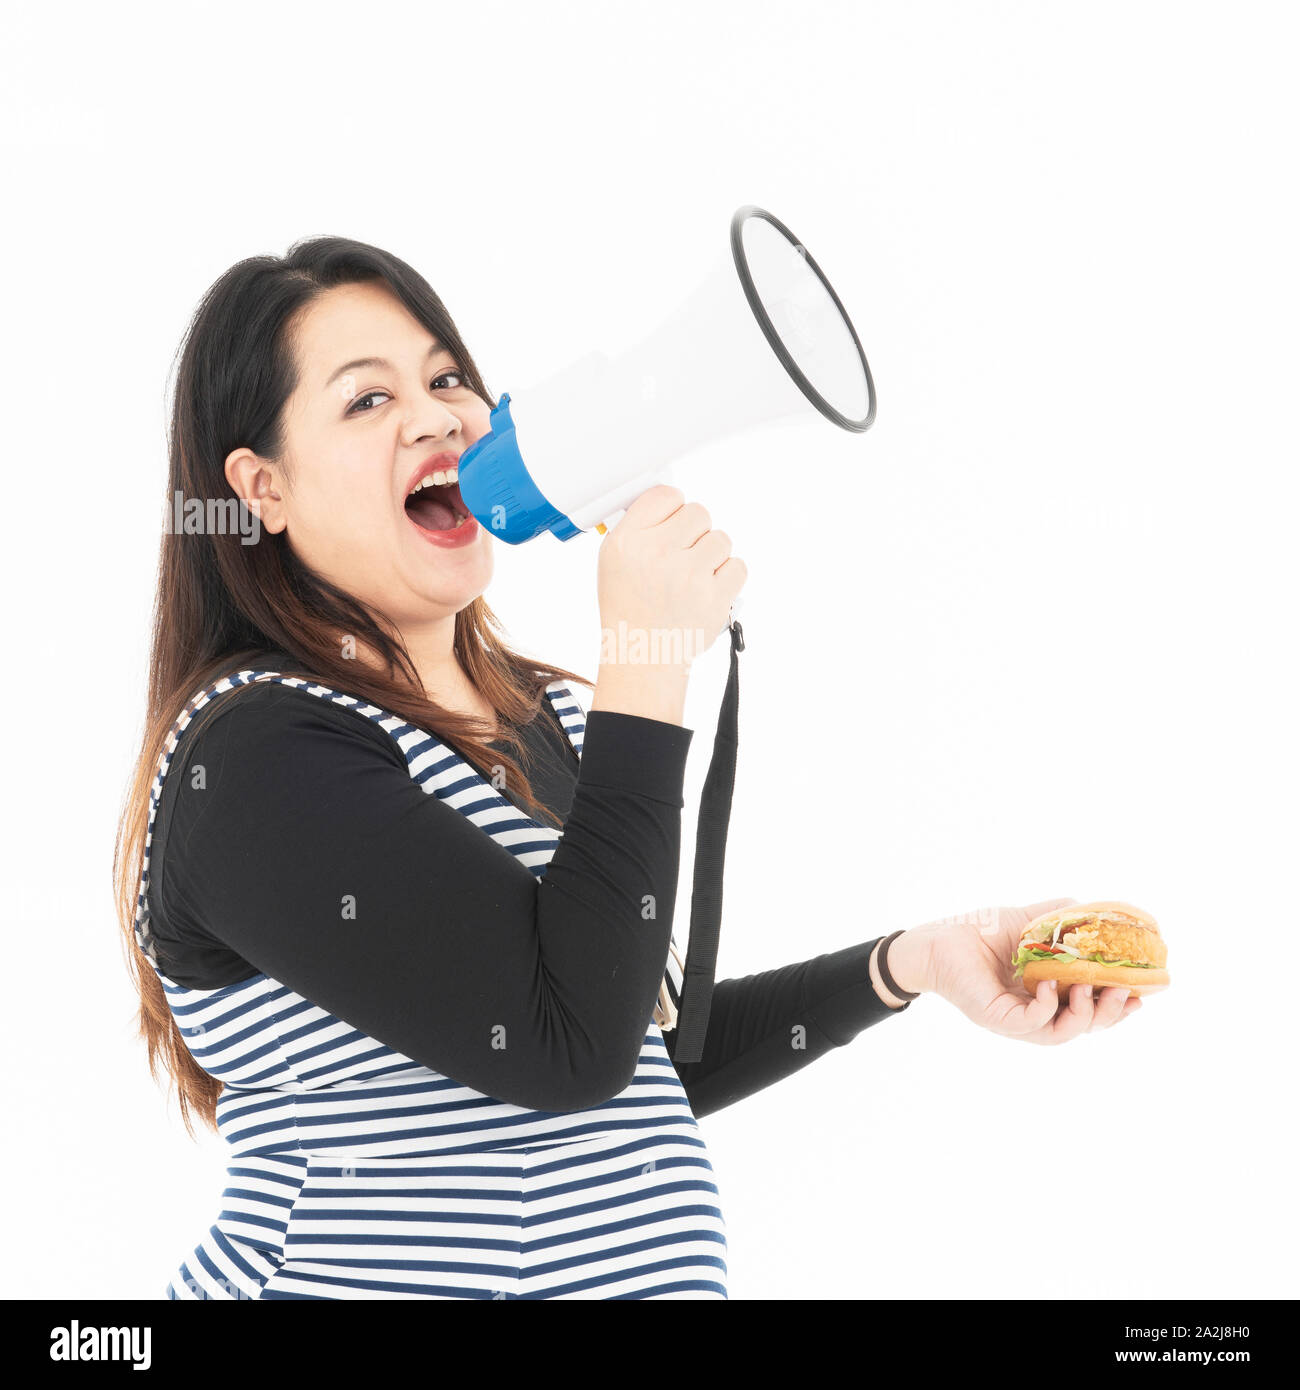 Eine junge fette Frau spricht mit einem Megaphon und es ist ein Hamburger in der Hand. Sie lächelt und glücklich, das Essen, das Sie essen mag. Sie ist hungrig. Uhr Stockfoto